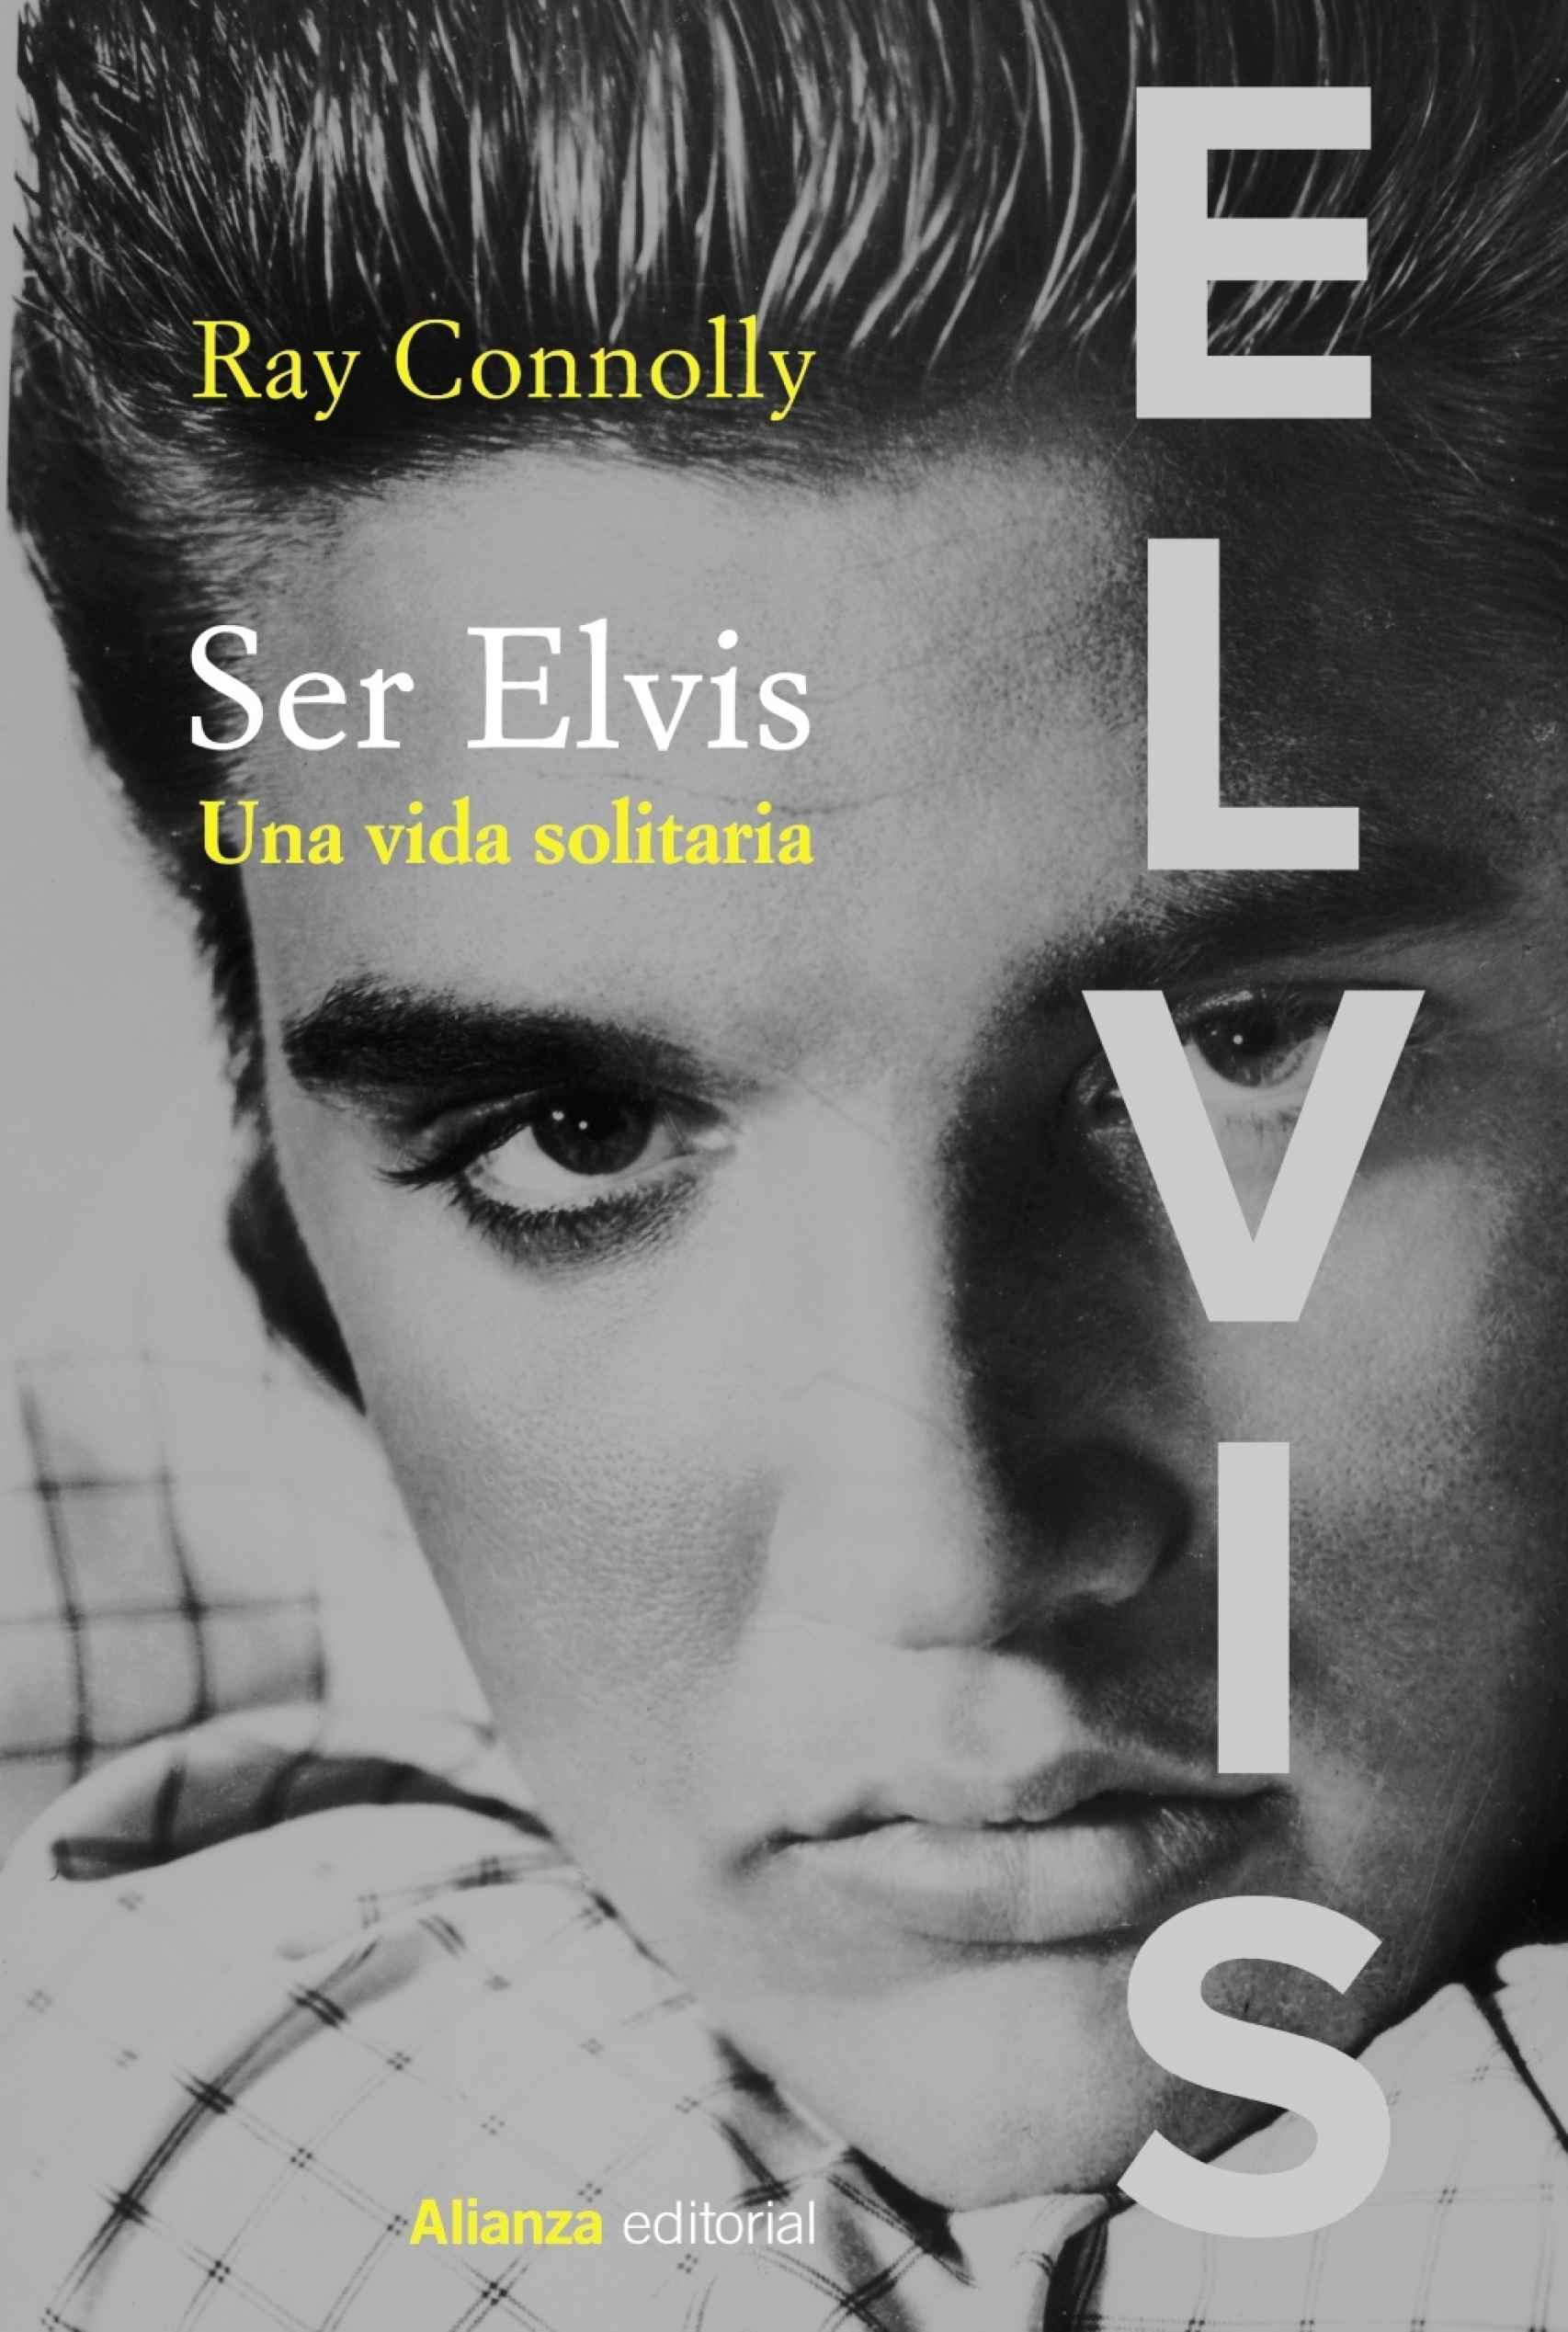 Portada de 'Ser Elvis' de Ray Connolly.